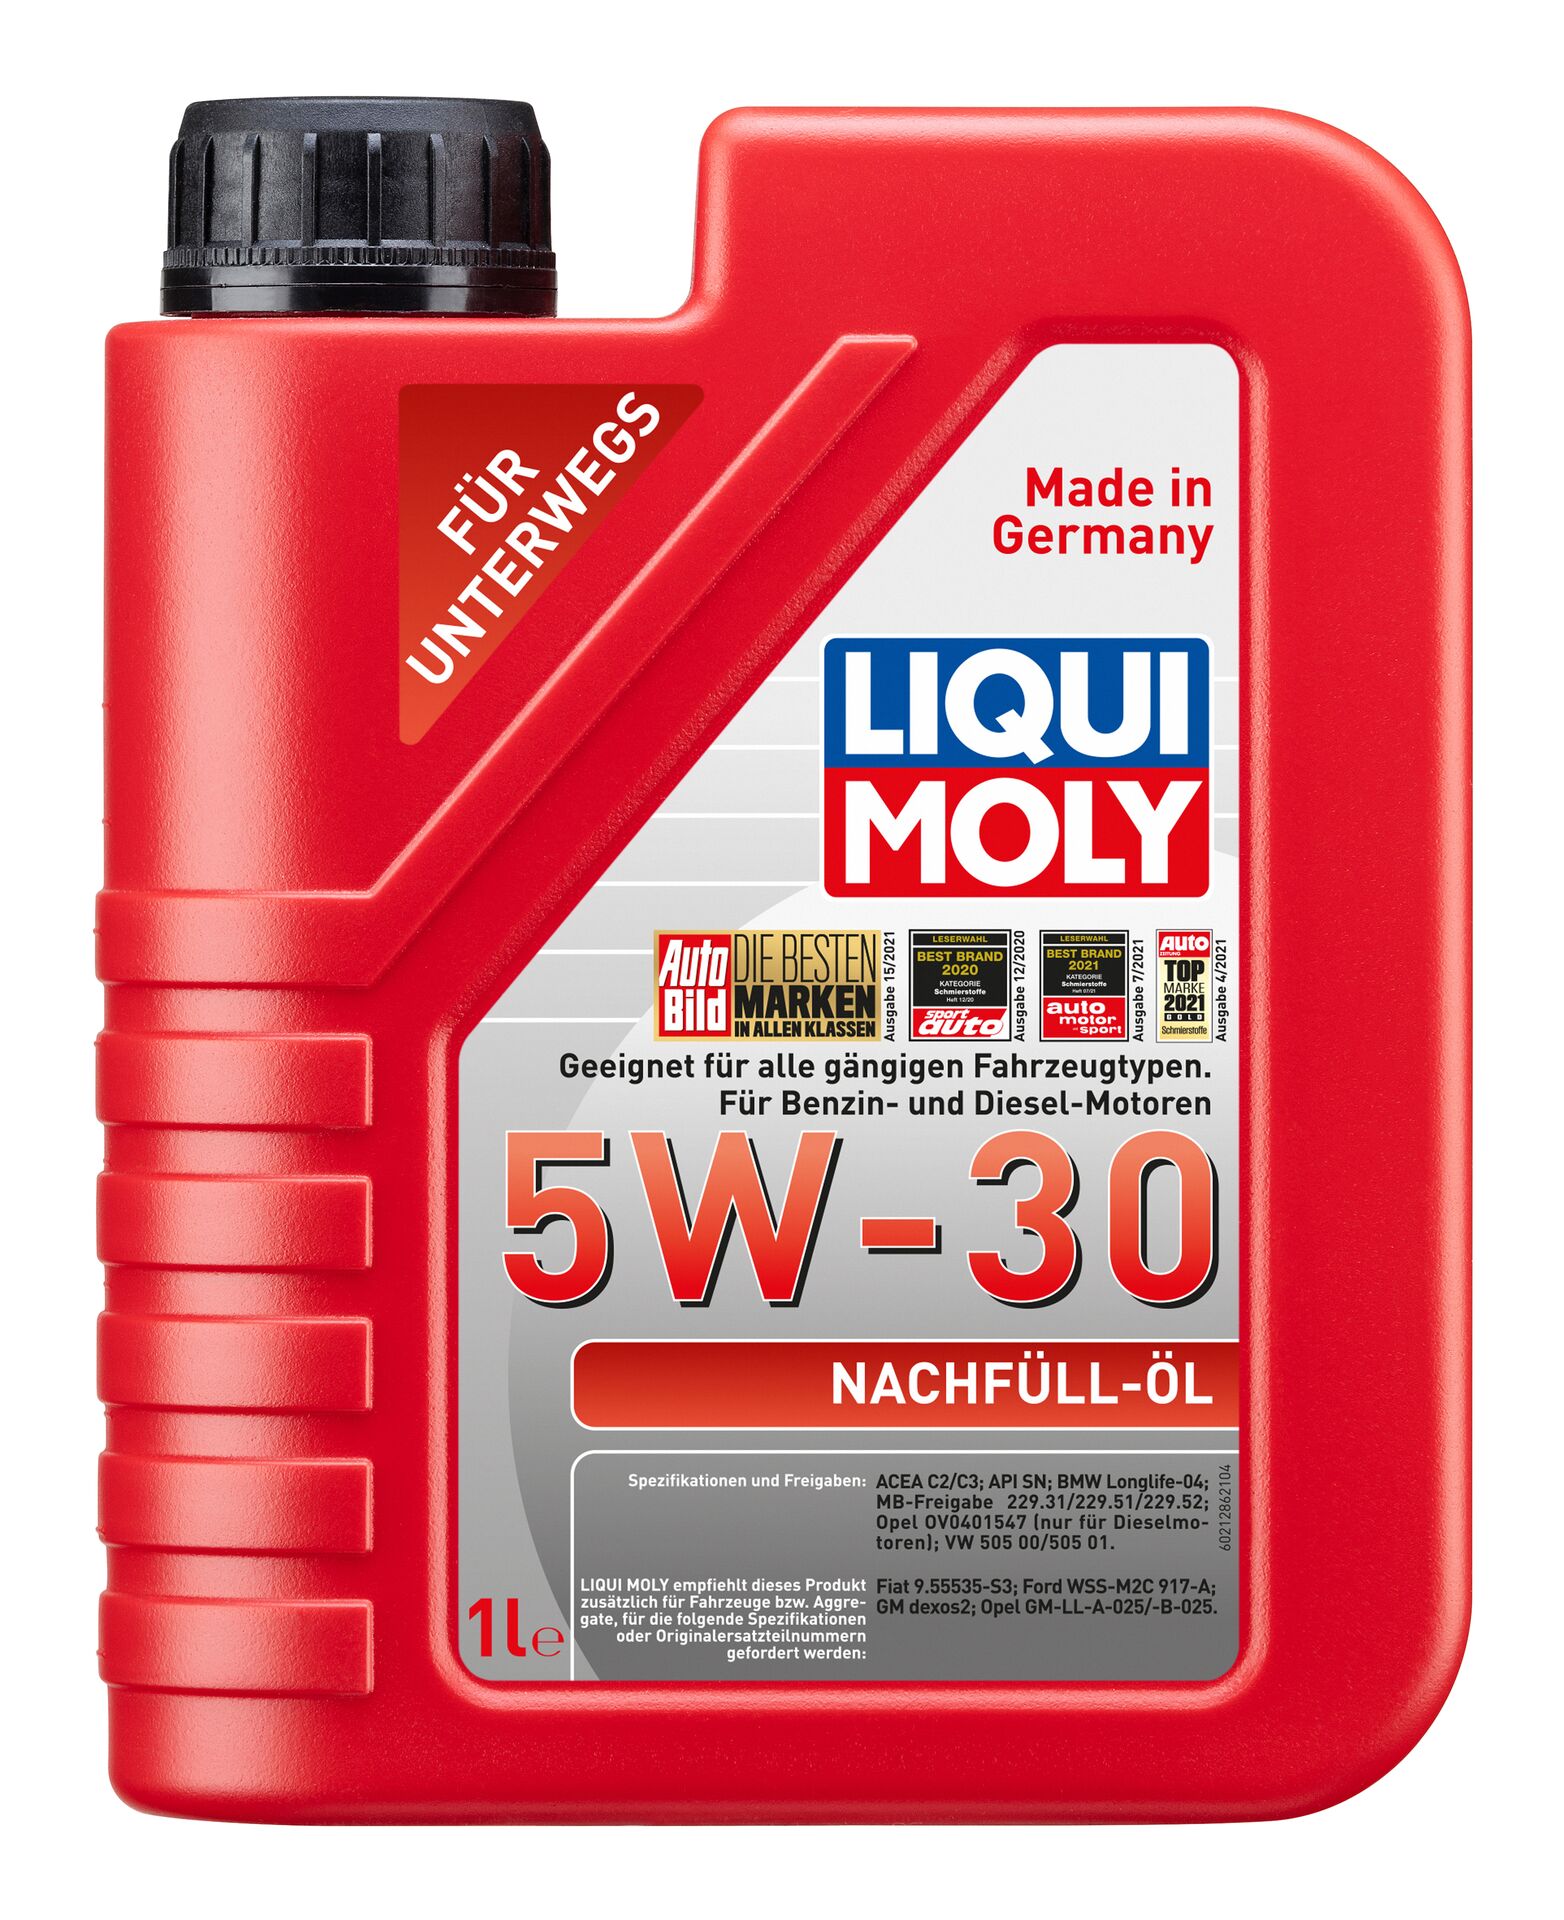 LIQUI-MOLY Nachfüll-Öl 5W-30 1 l 